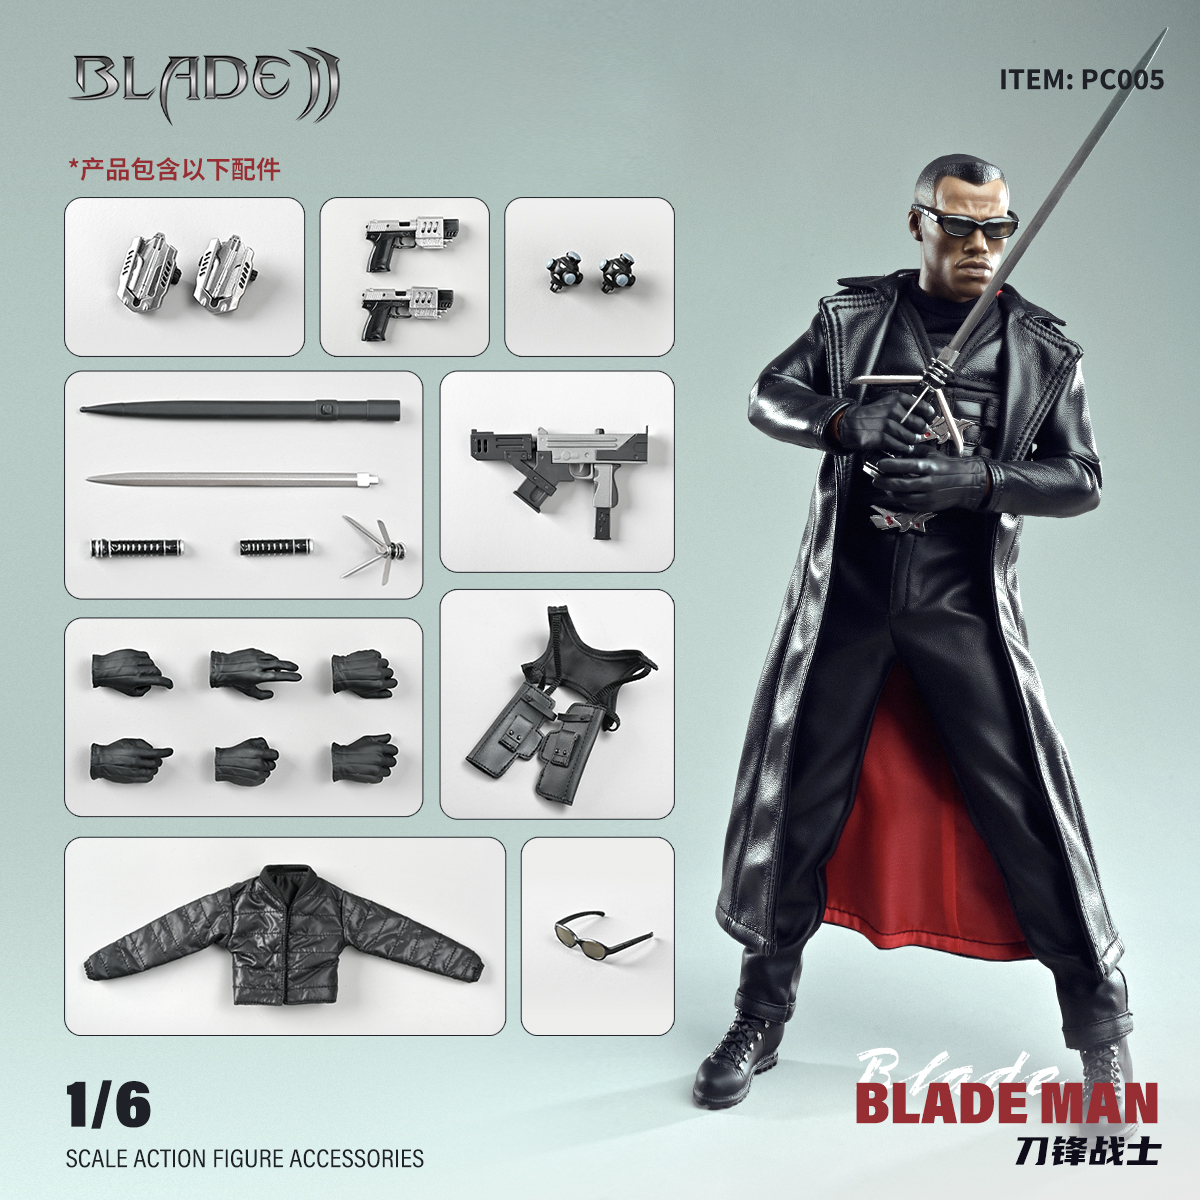 1/6刀锋战士Blade超级英雄 PC005 兵人成品模型 